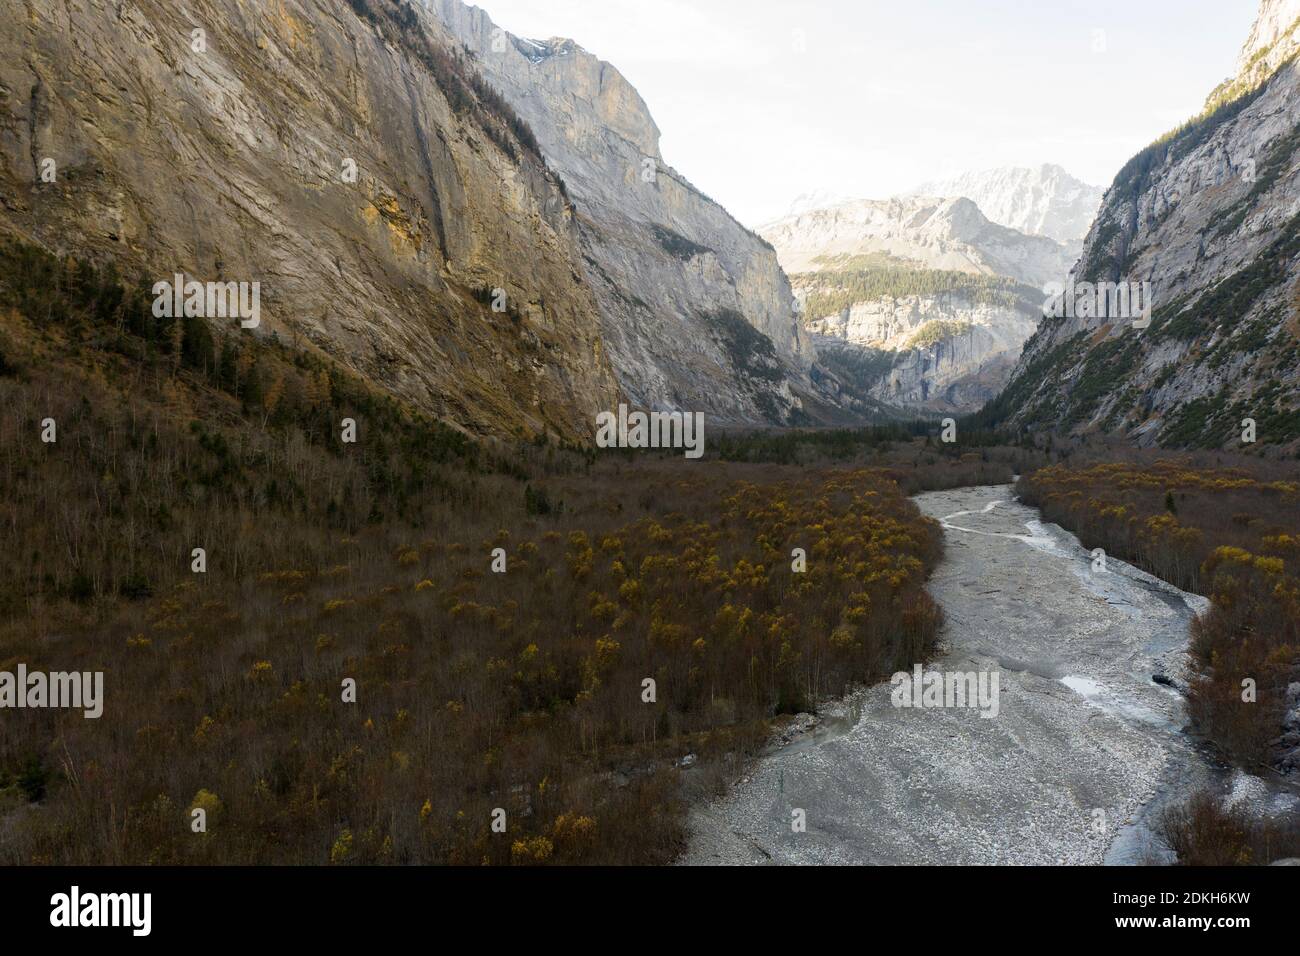 Vallée plate entourée de rochers escarpés, lit de rivière à la fin de l'automne Banque D'Images